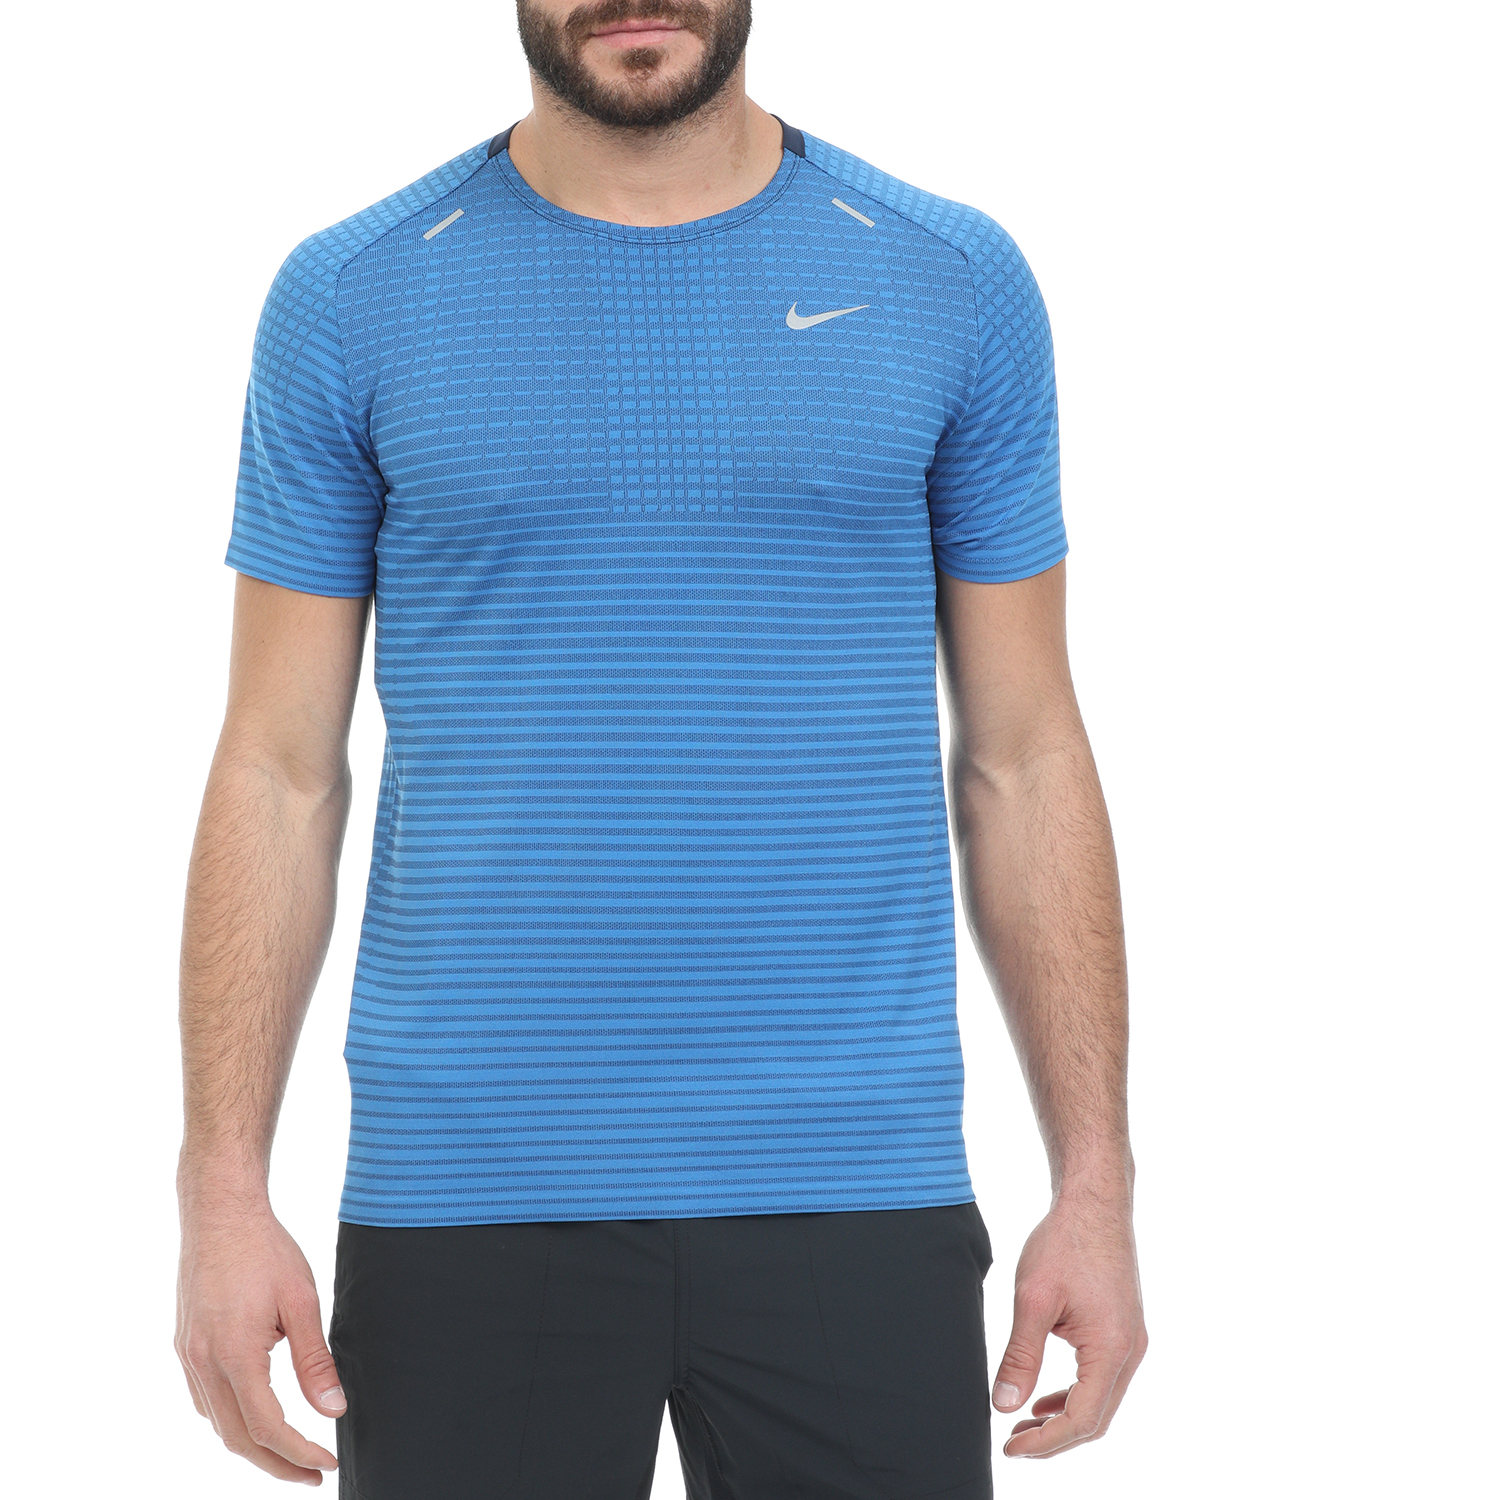 Ανδρικά/Ρούχα/Αθλητικά/T-shirt NIKE - Ανδρική μπλούζα TECHKNIT ULTRA SS μπλε